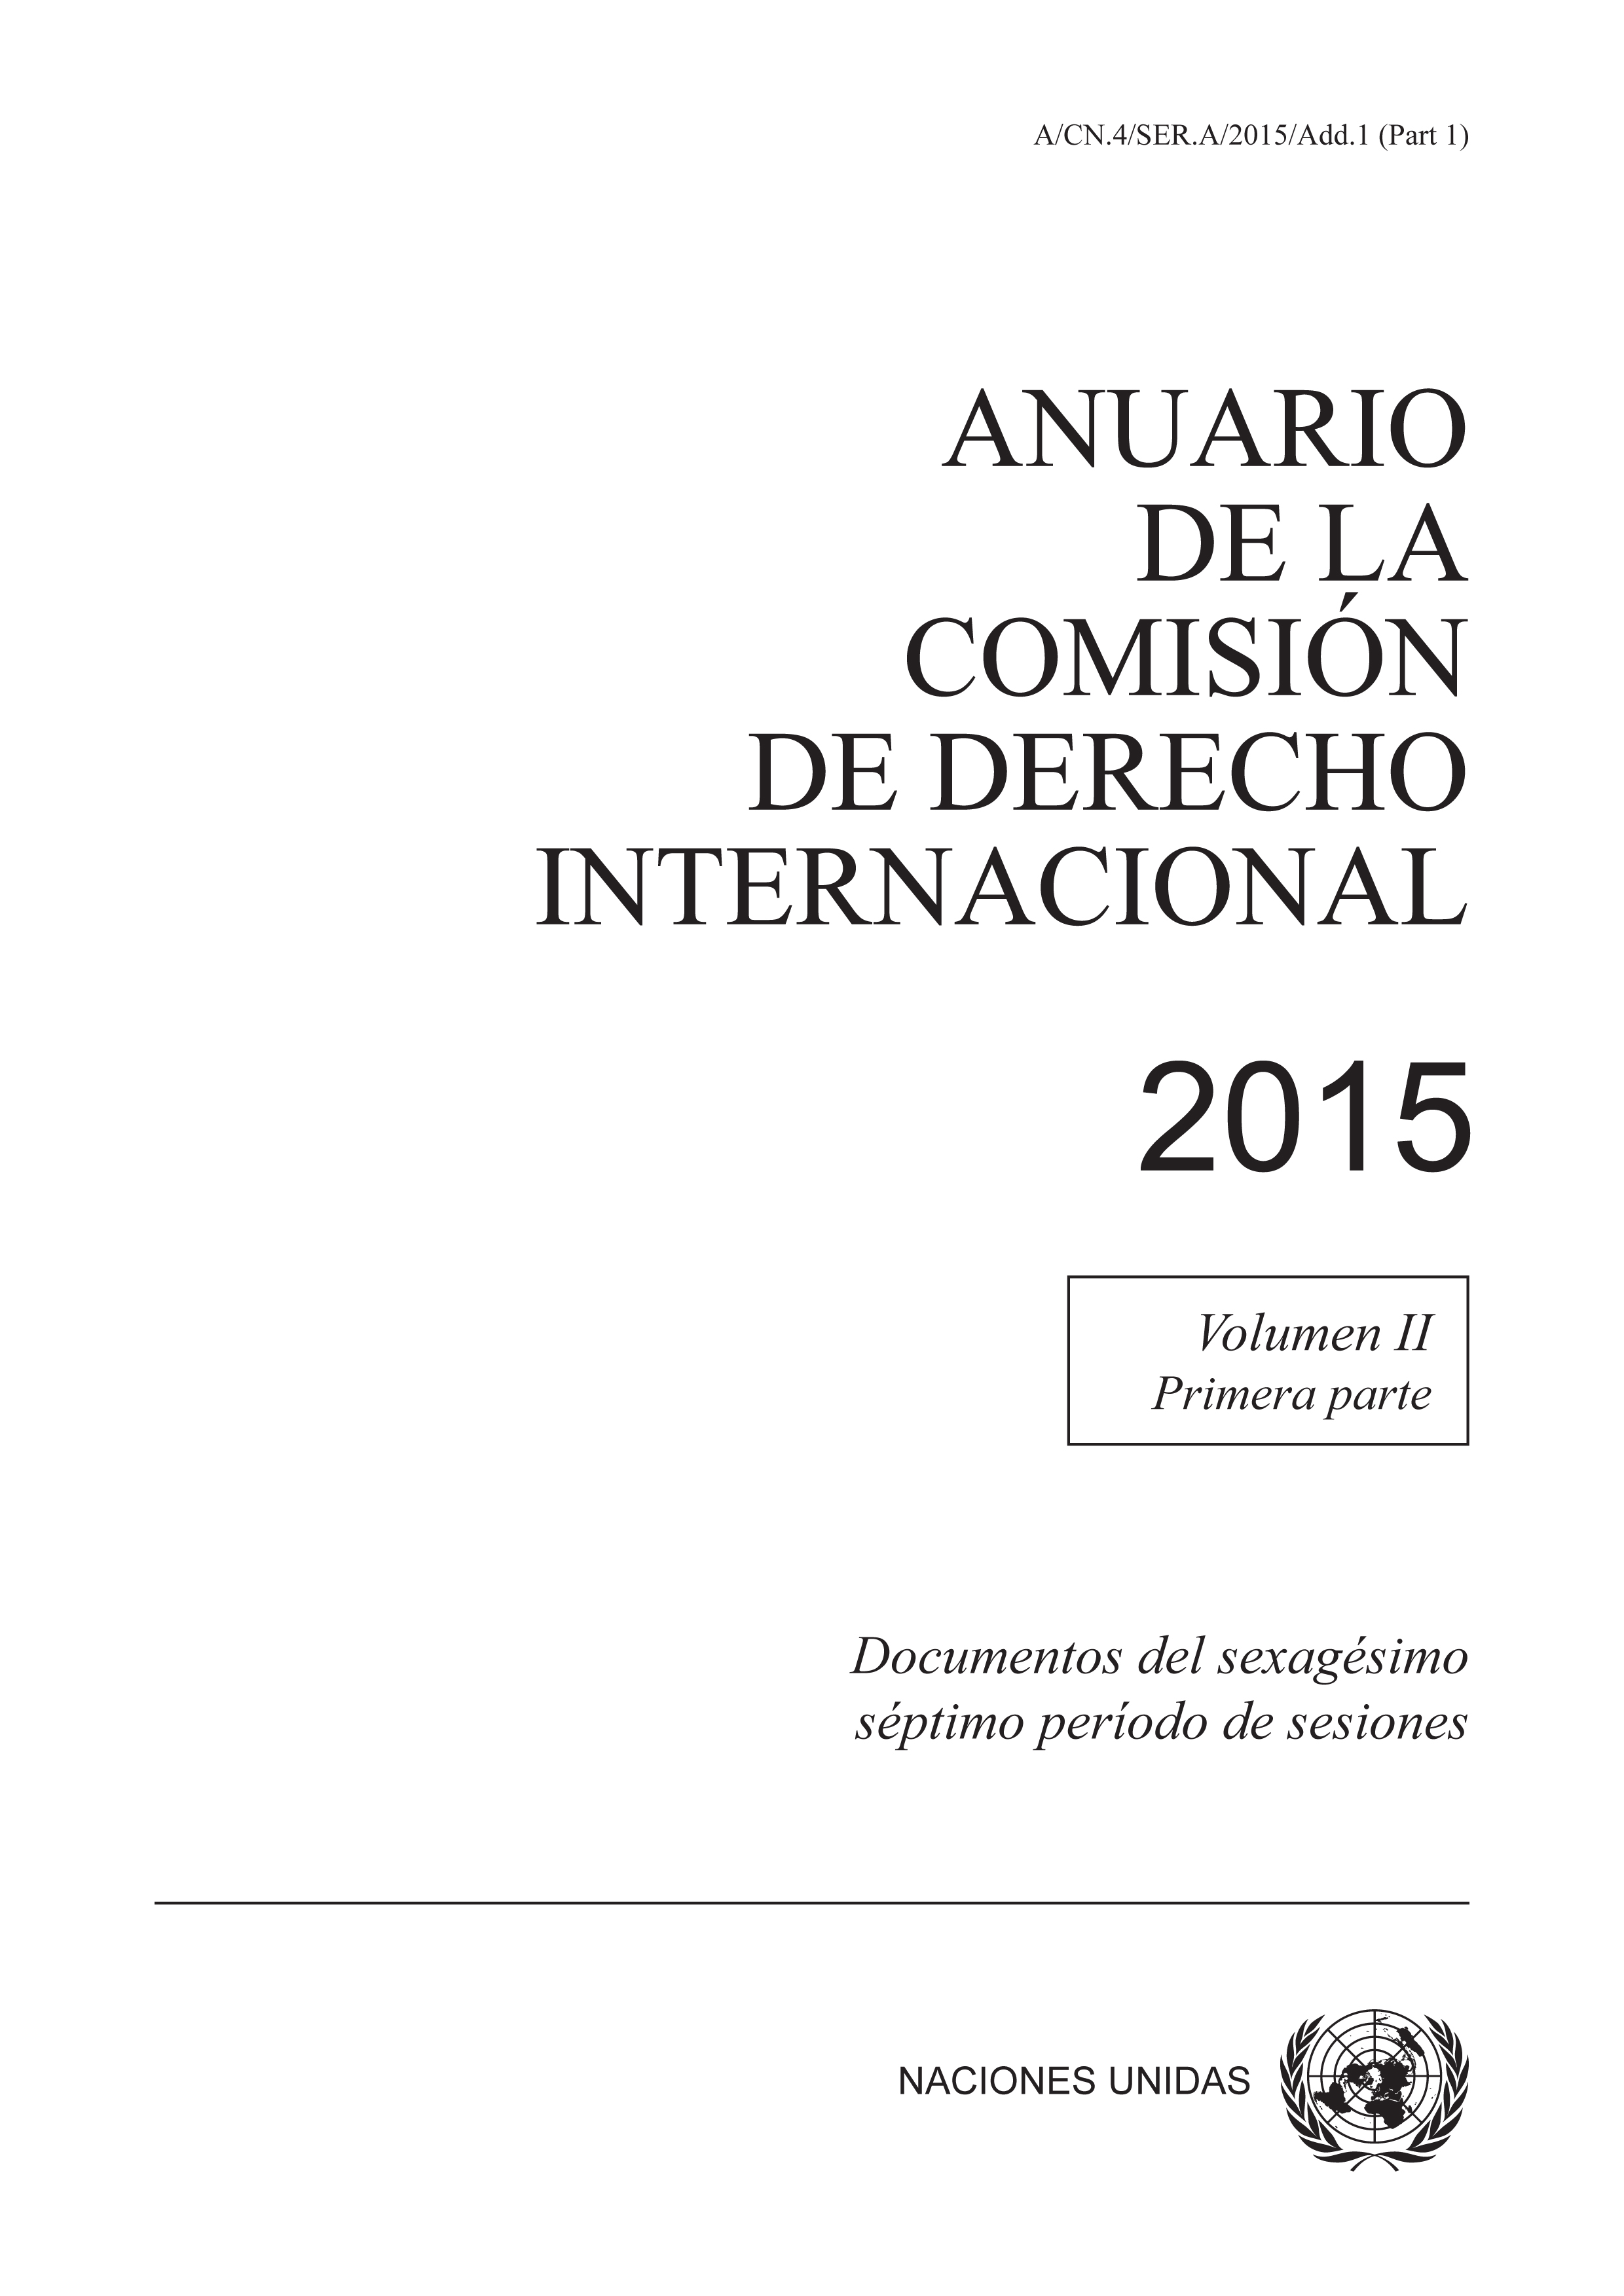 image of Anuario de la Comisión de Derecho Internacional 2015, Vol. II Parte 1